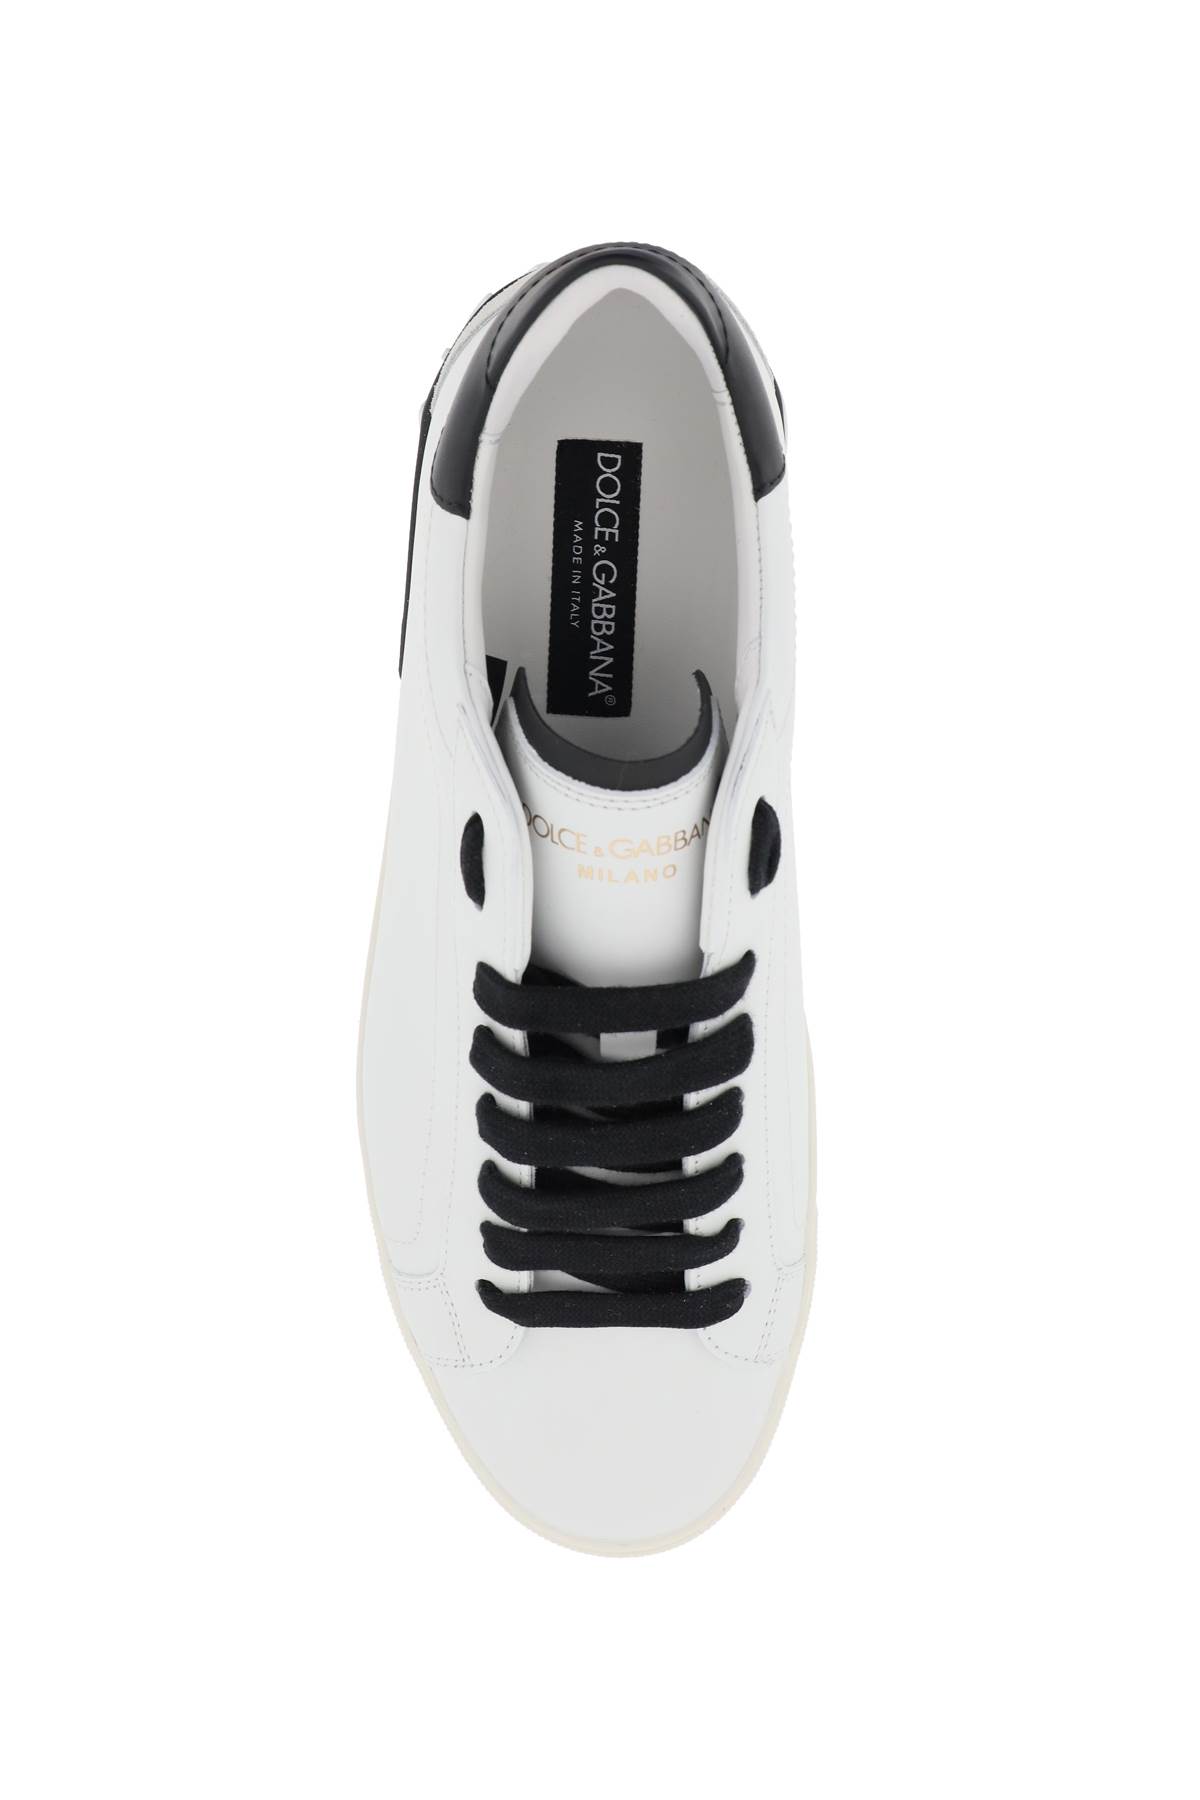 Shop Dolce & Gabbana Nappa Leather Portofino Sneakers In Bianco Nero (white)